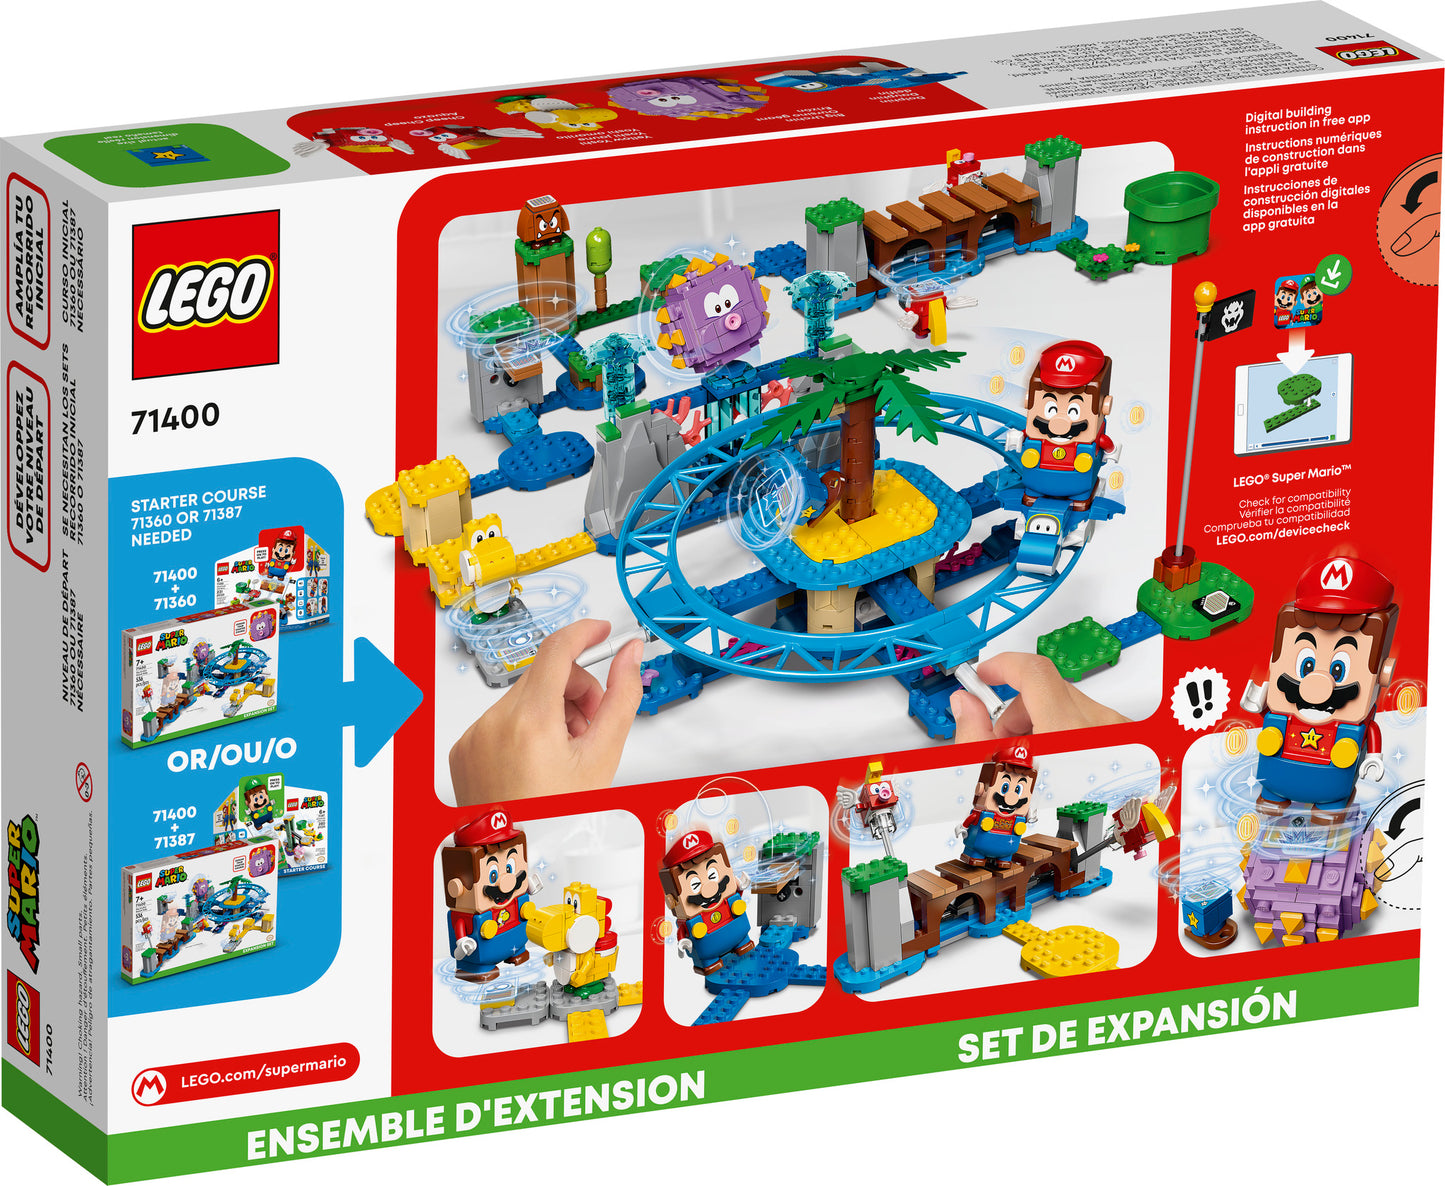 71400 LEGO Super Mario - Spiaggia del Ricciospino Gigante - Pack di Espansione